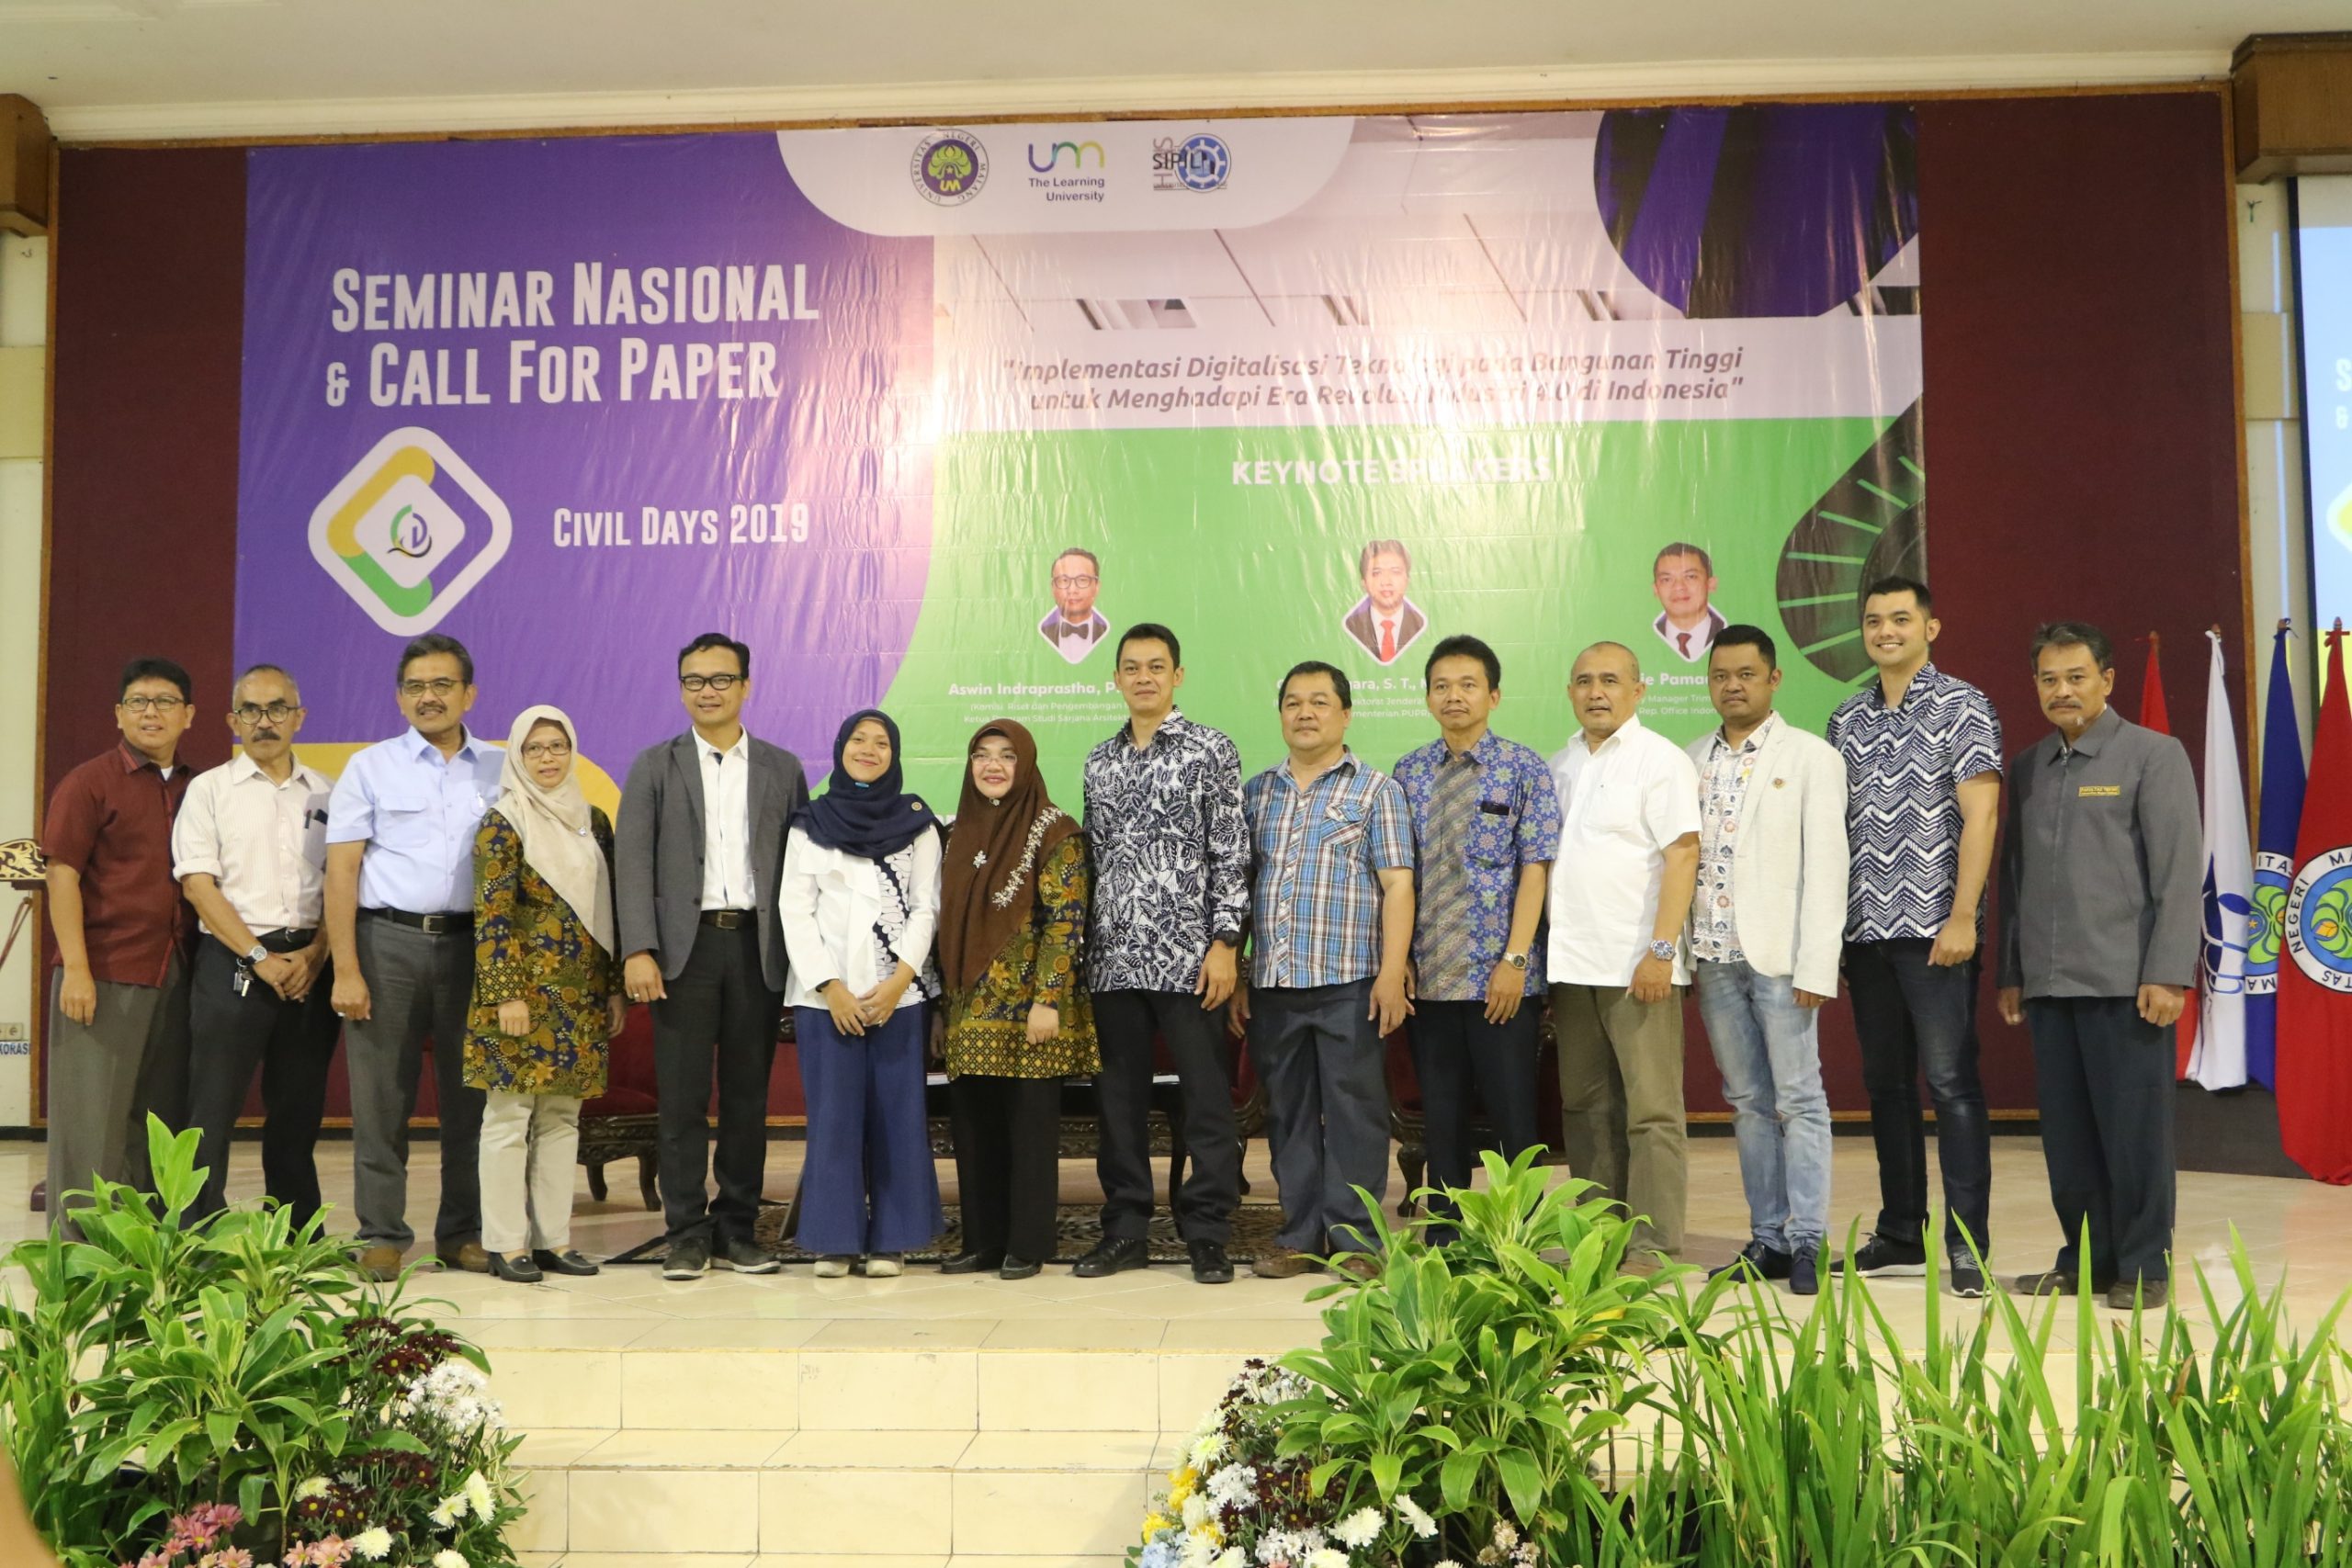 Seminar Nasional dan Call for Paper Civil Days 2019 “Implementasi Digitalisasi Teknologi pada Bangunan Tinggi untuk Menghadapi Era Revolusi 4.0 di Indonesia”